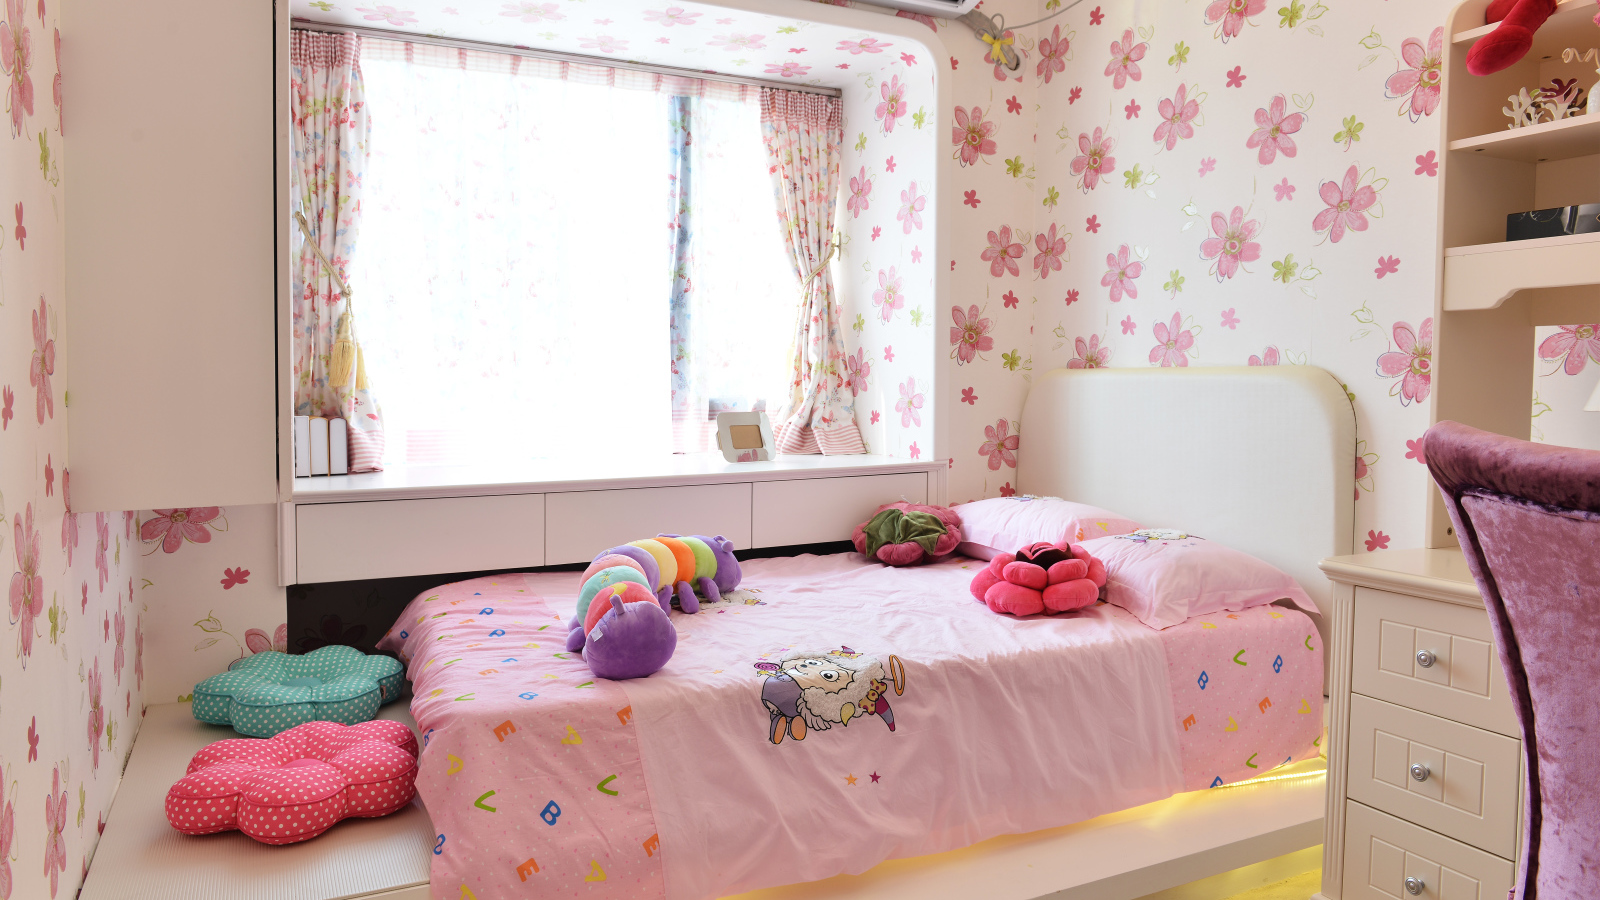 Красивая детская комната с игрушками и стенами в цветах